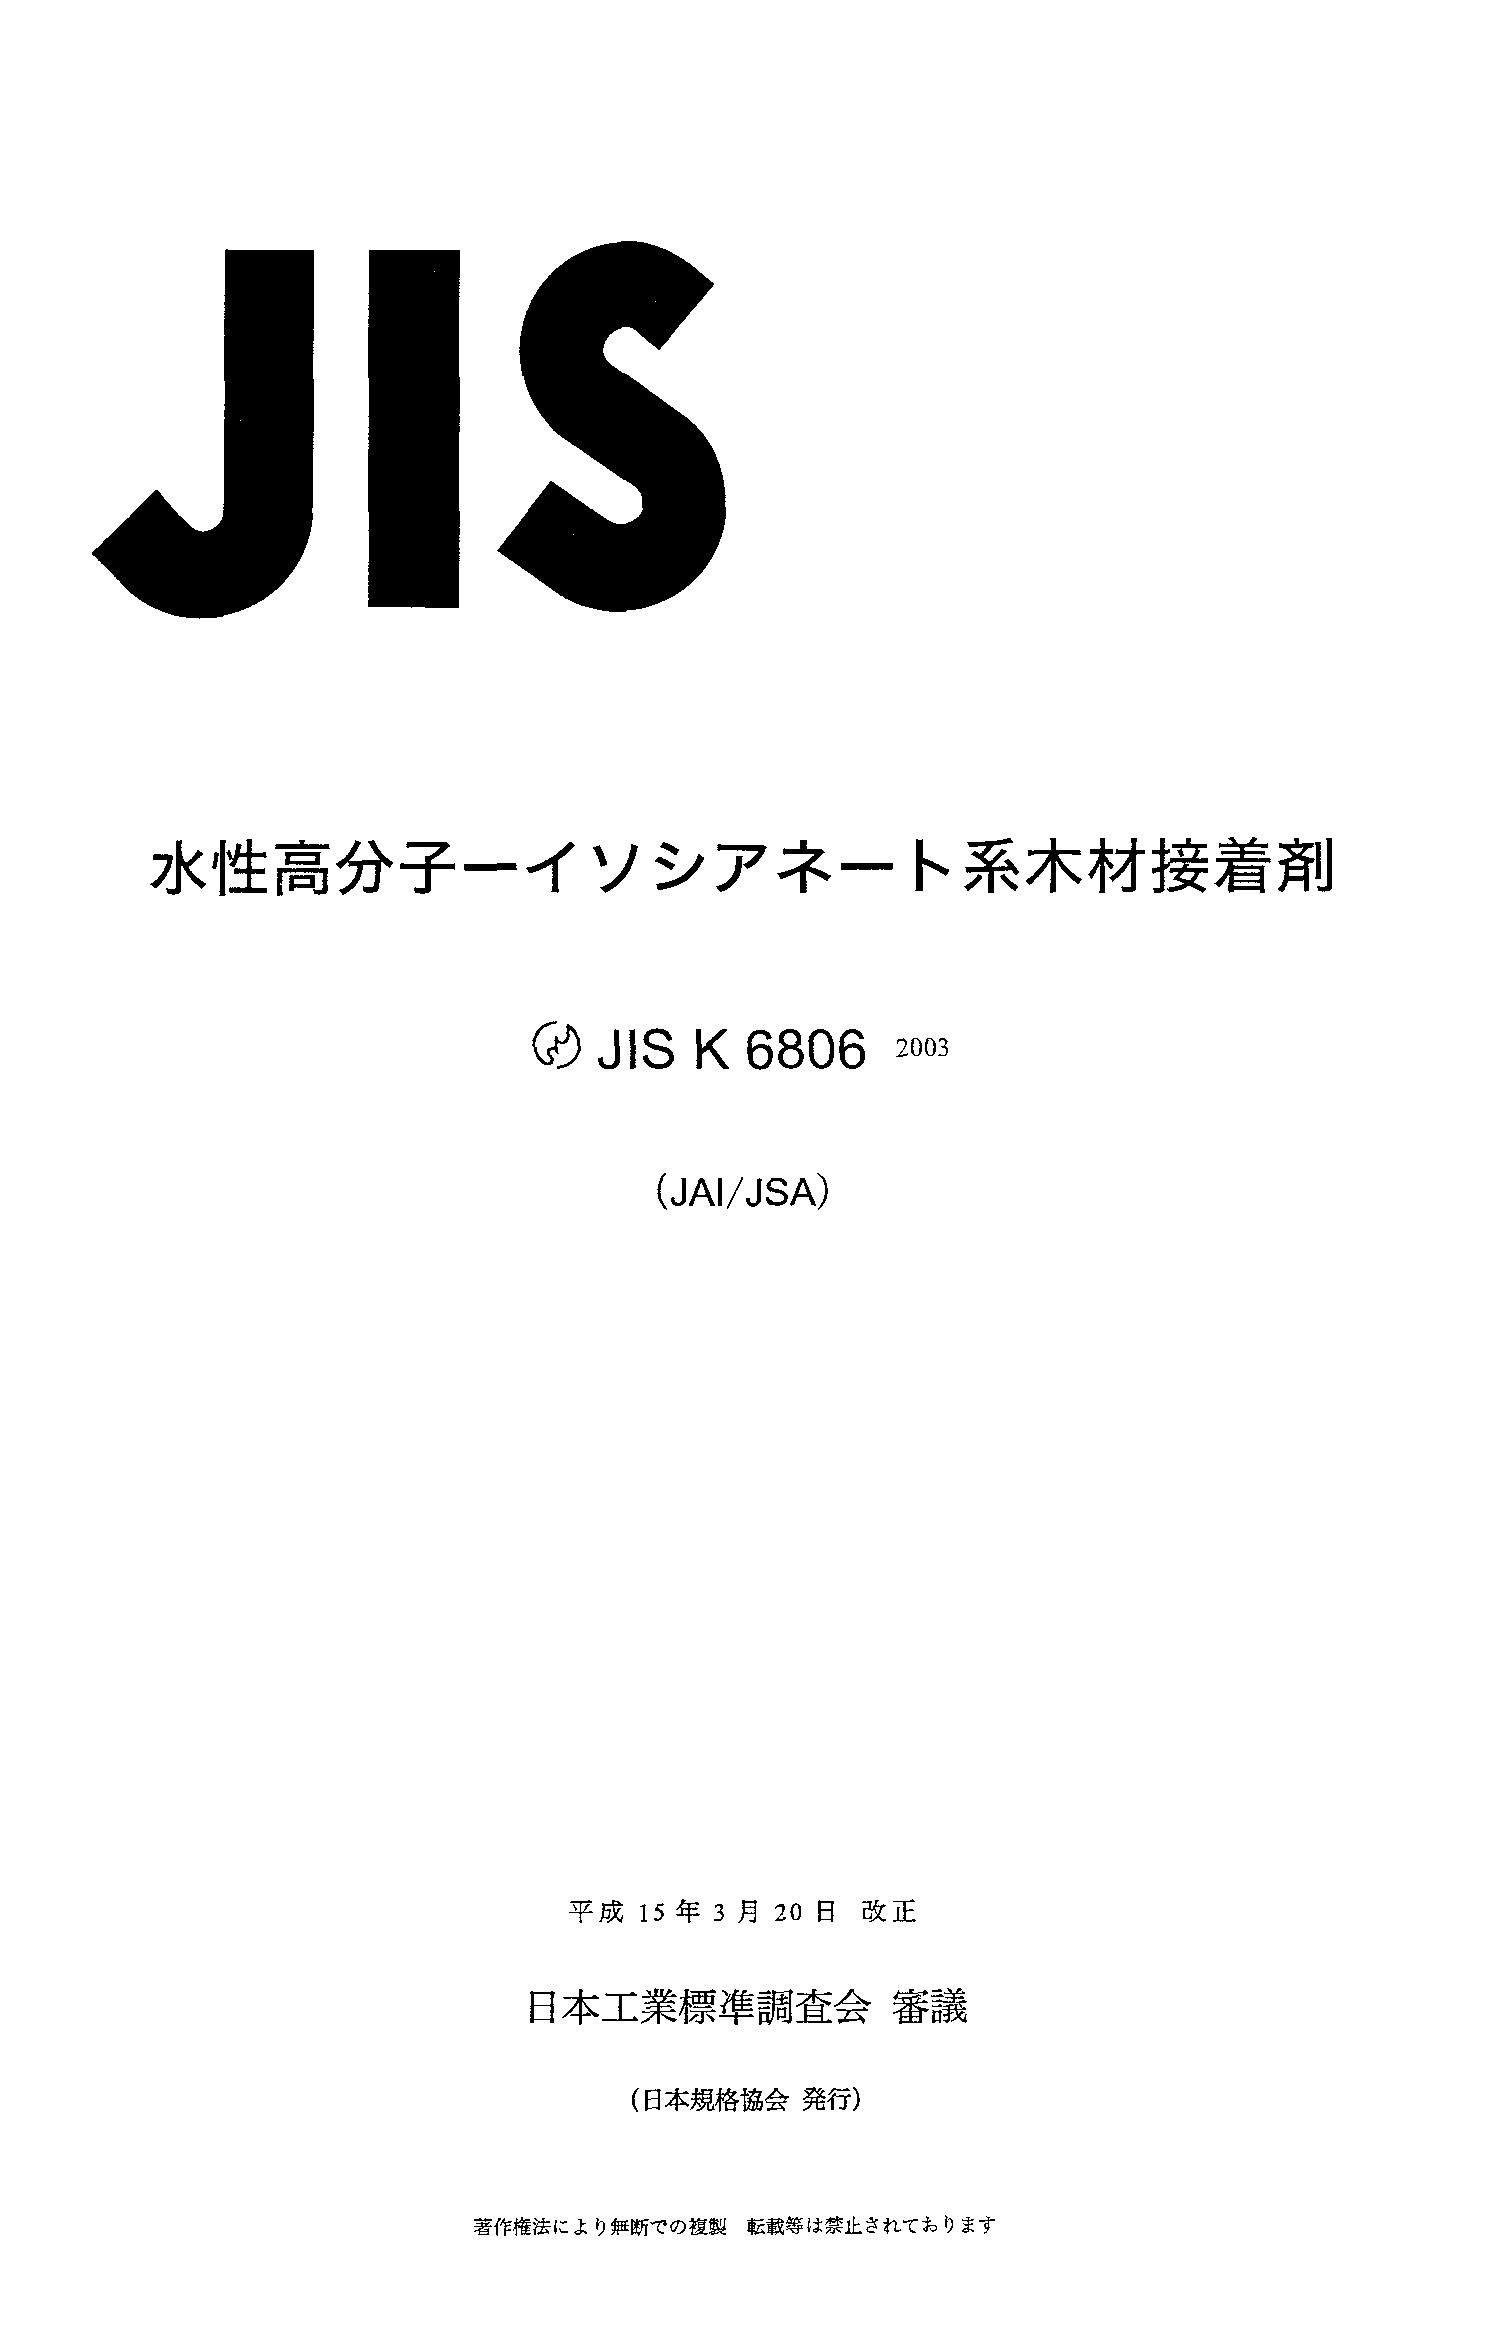 JIS K 6806:2003